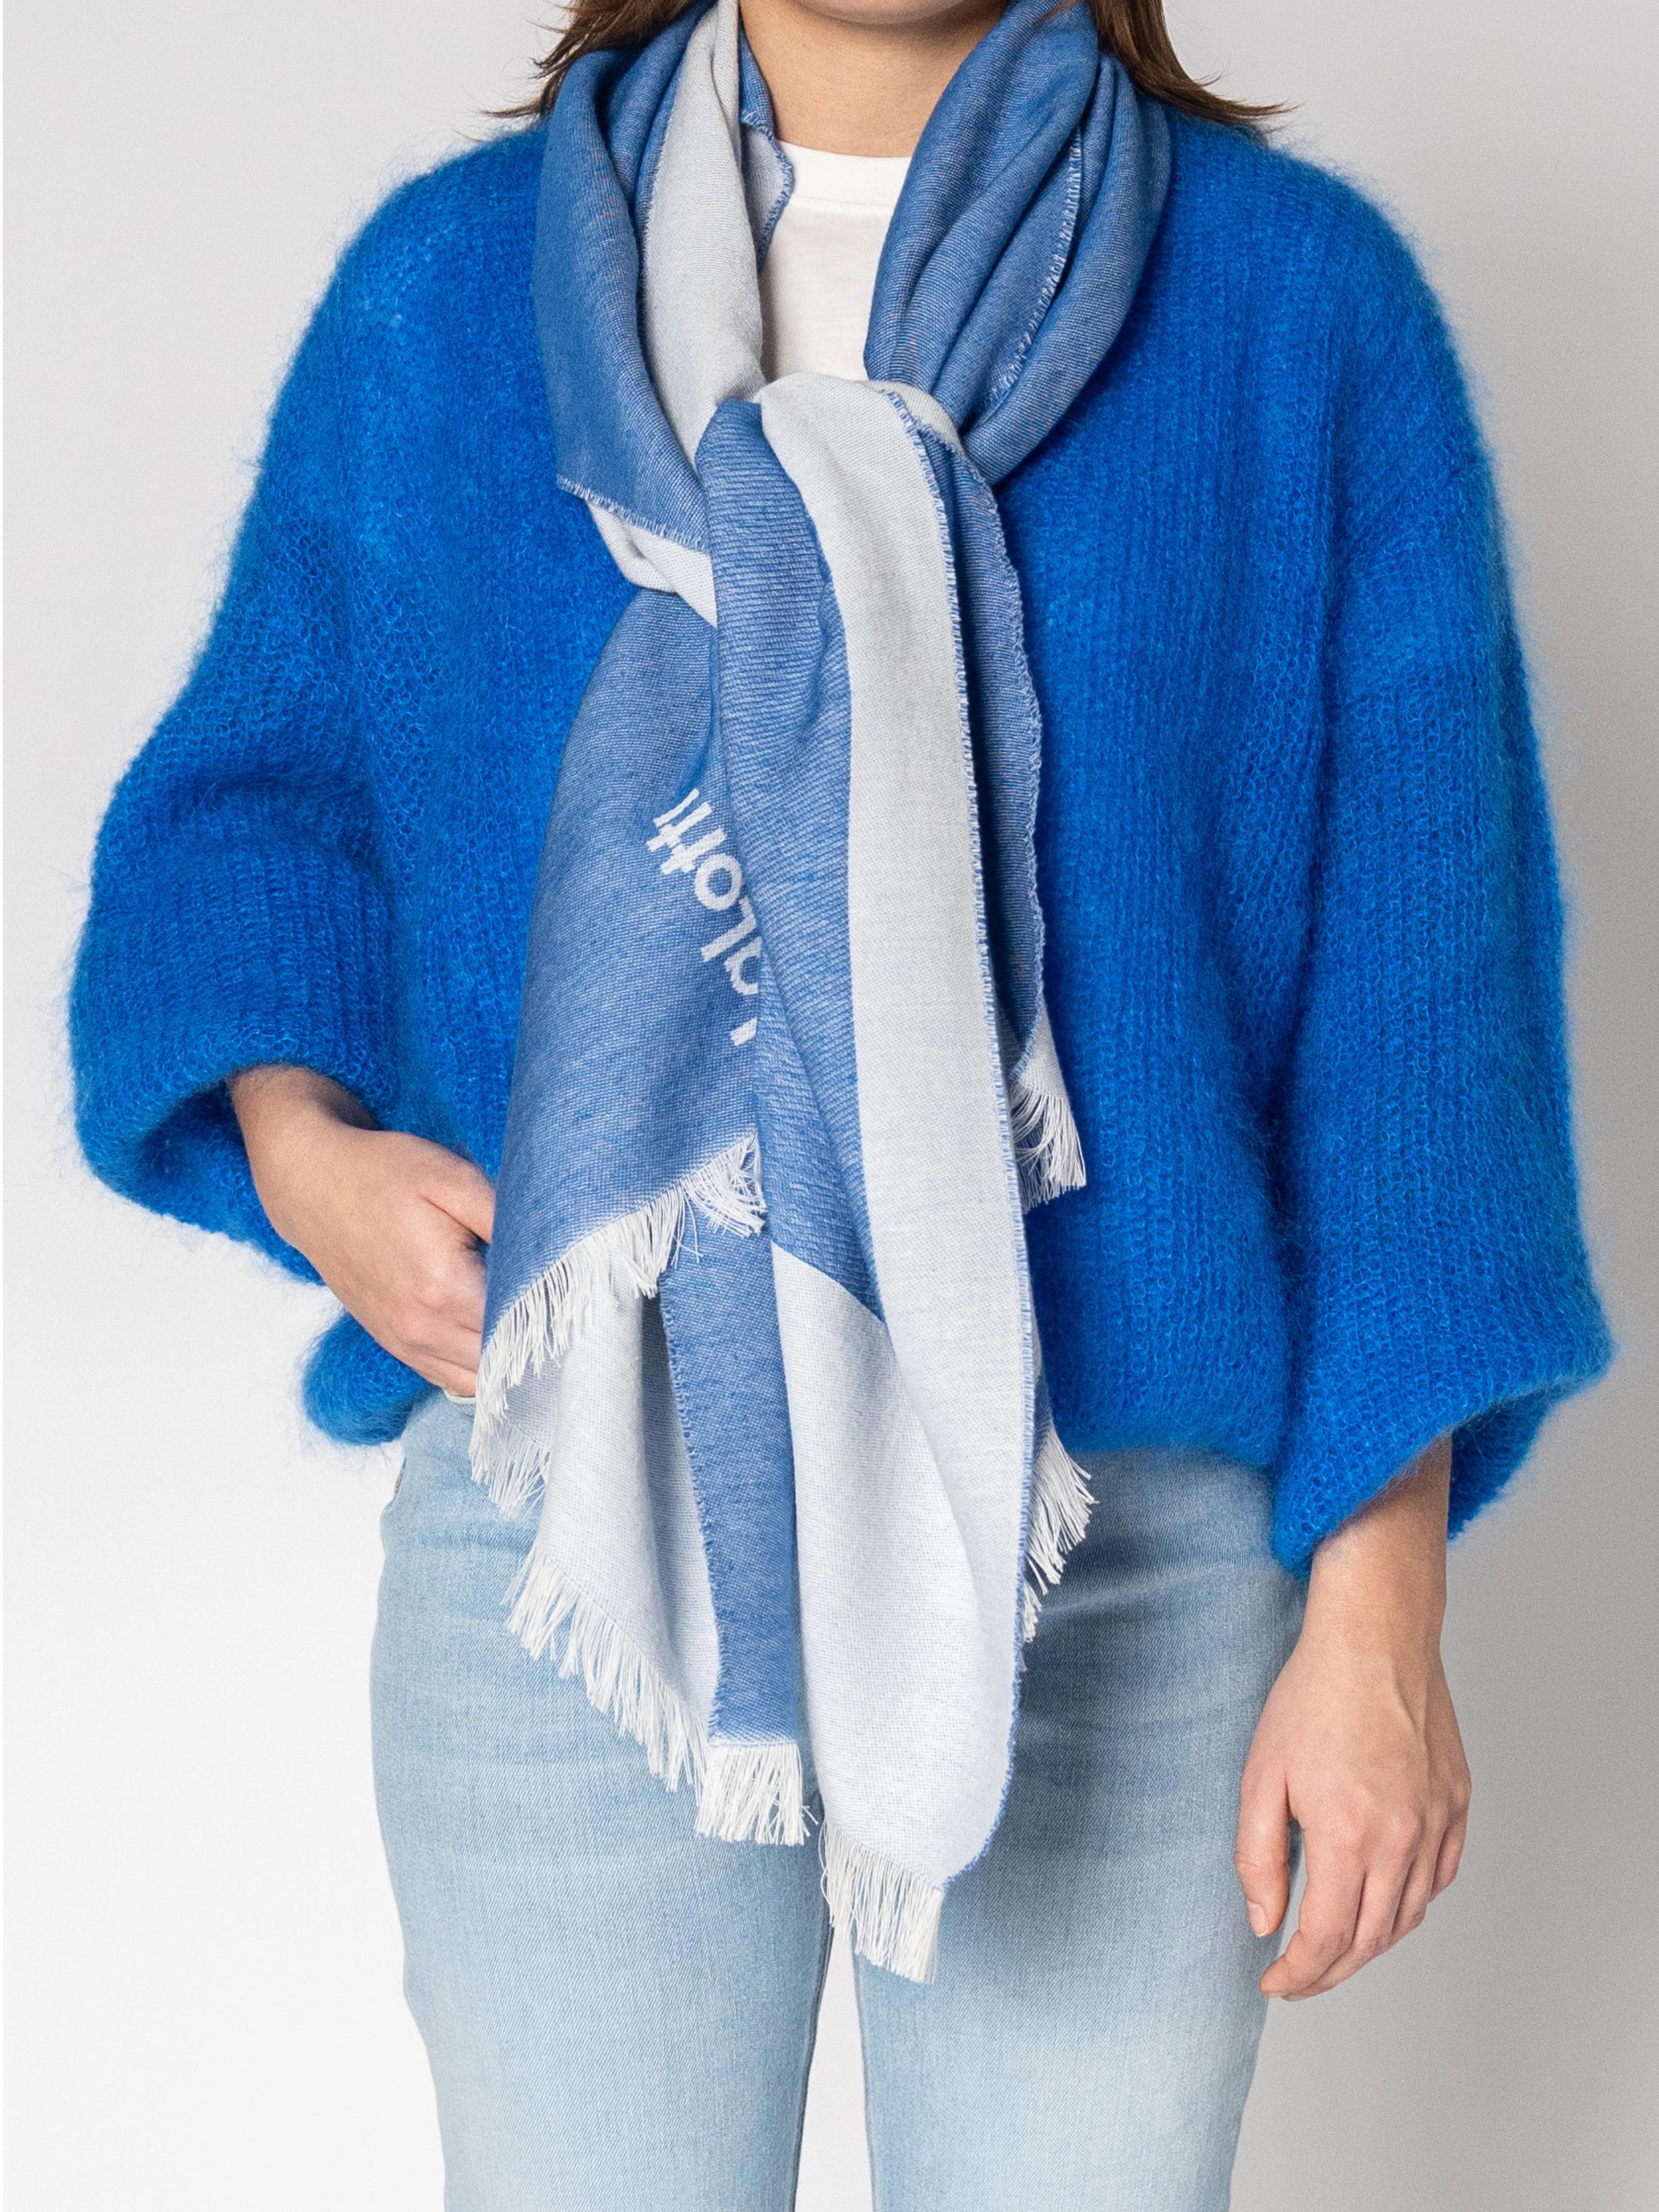 Sjaal met logo - Bic Blauw